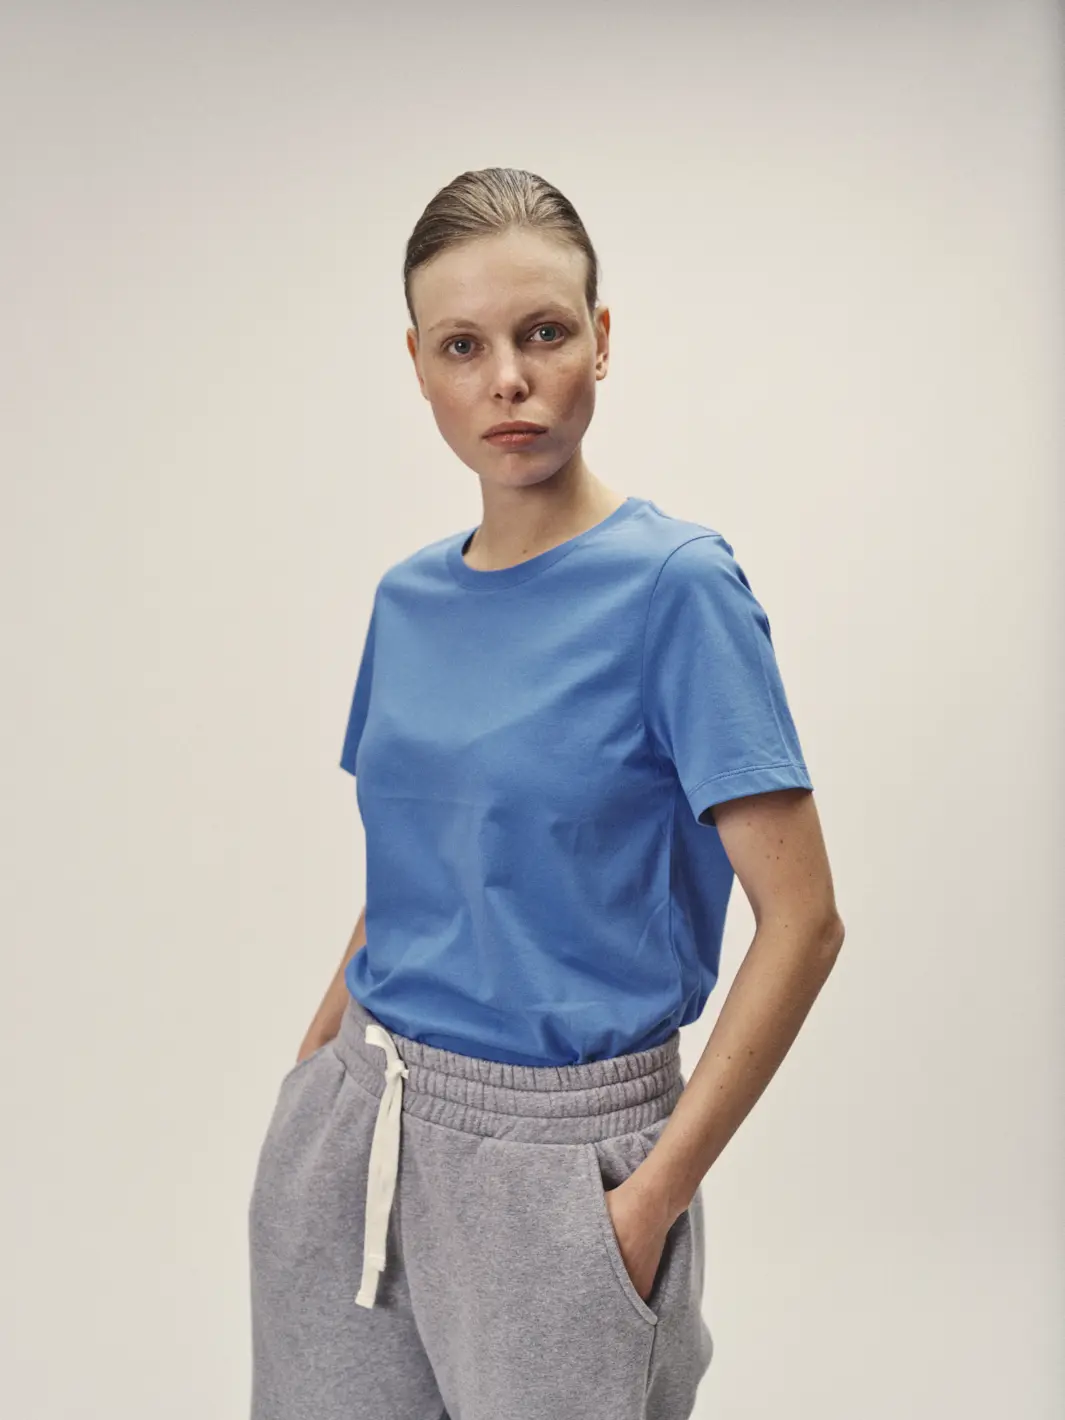 Weibliches Model mit Blick in die Kamera, mit Fokus auf dem blauen Rundhals-T-Shirt